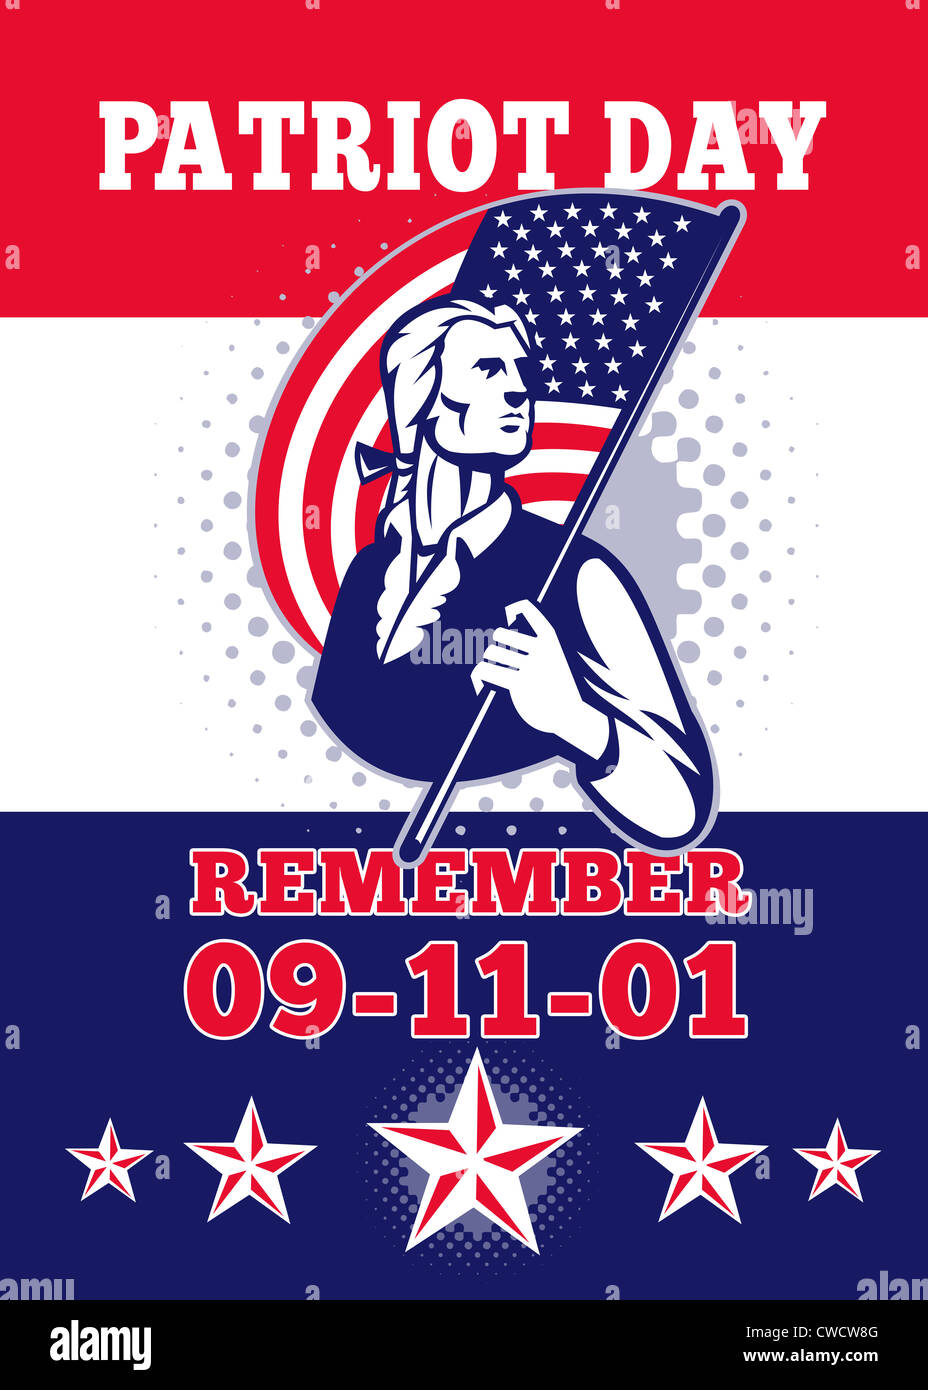 Carte de vœux de l'affiche illustration d'un soldat révolutionnaire minuteman patriot tenant un drapeau américain et le mot 'Remember 9-11' Banque D'Images